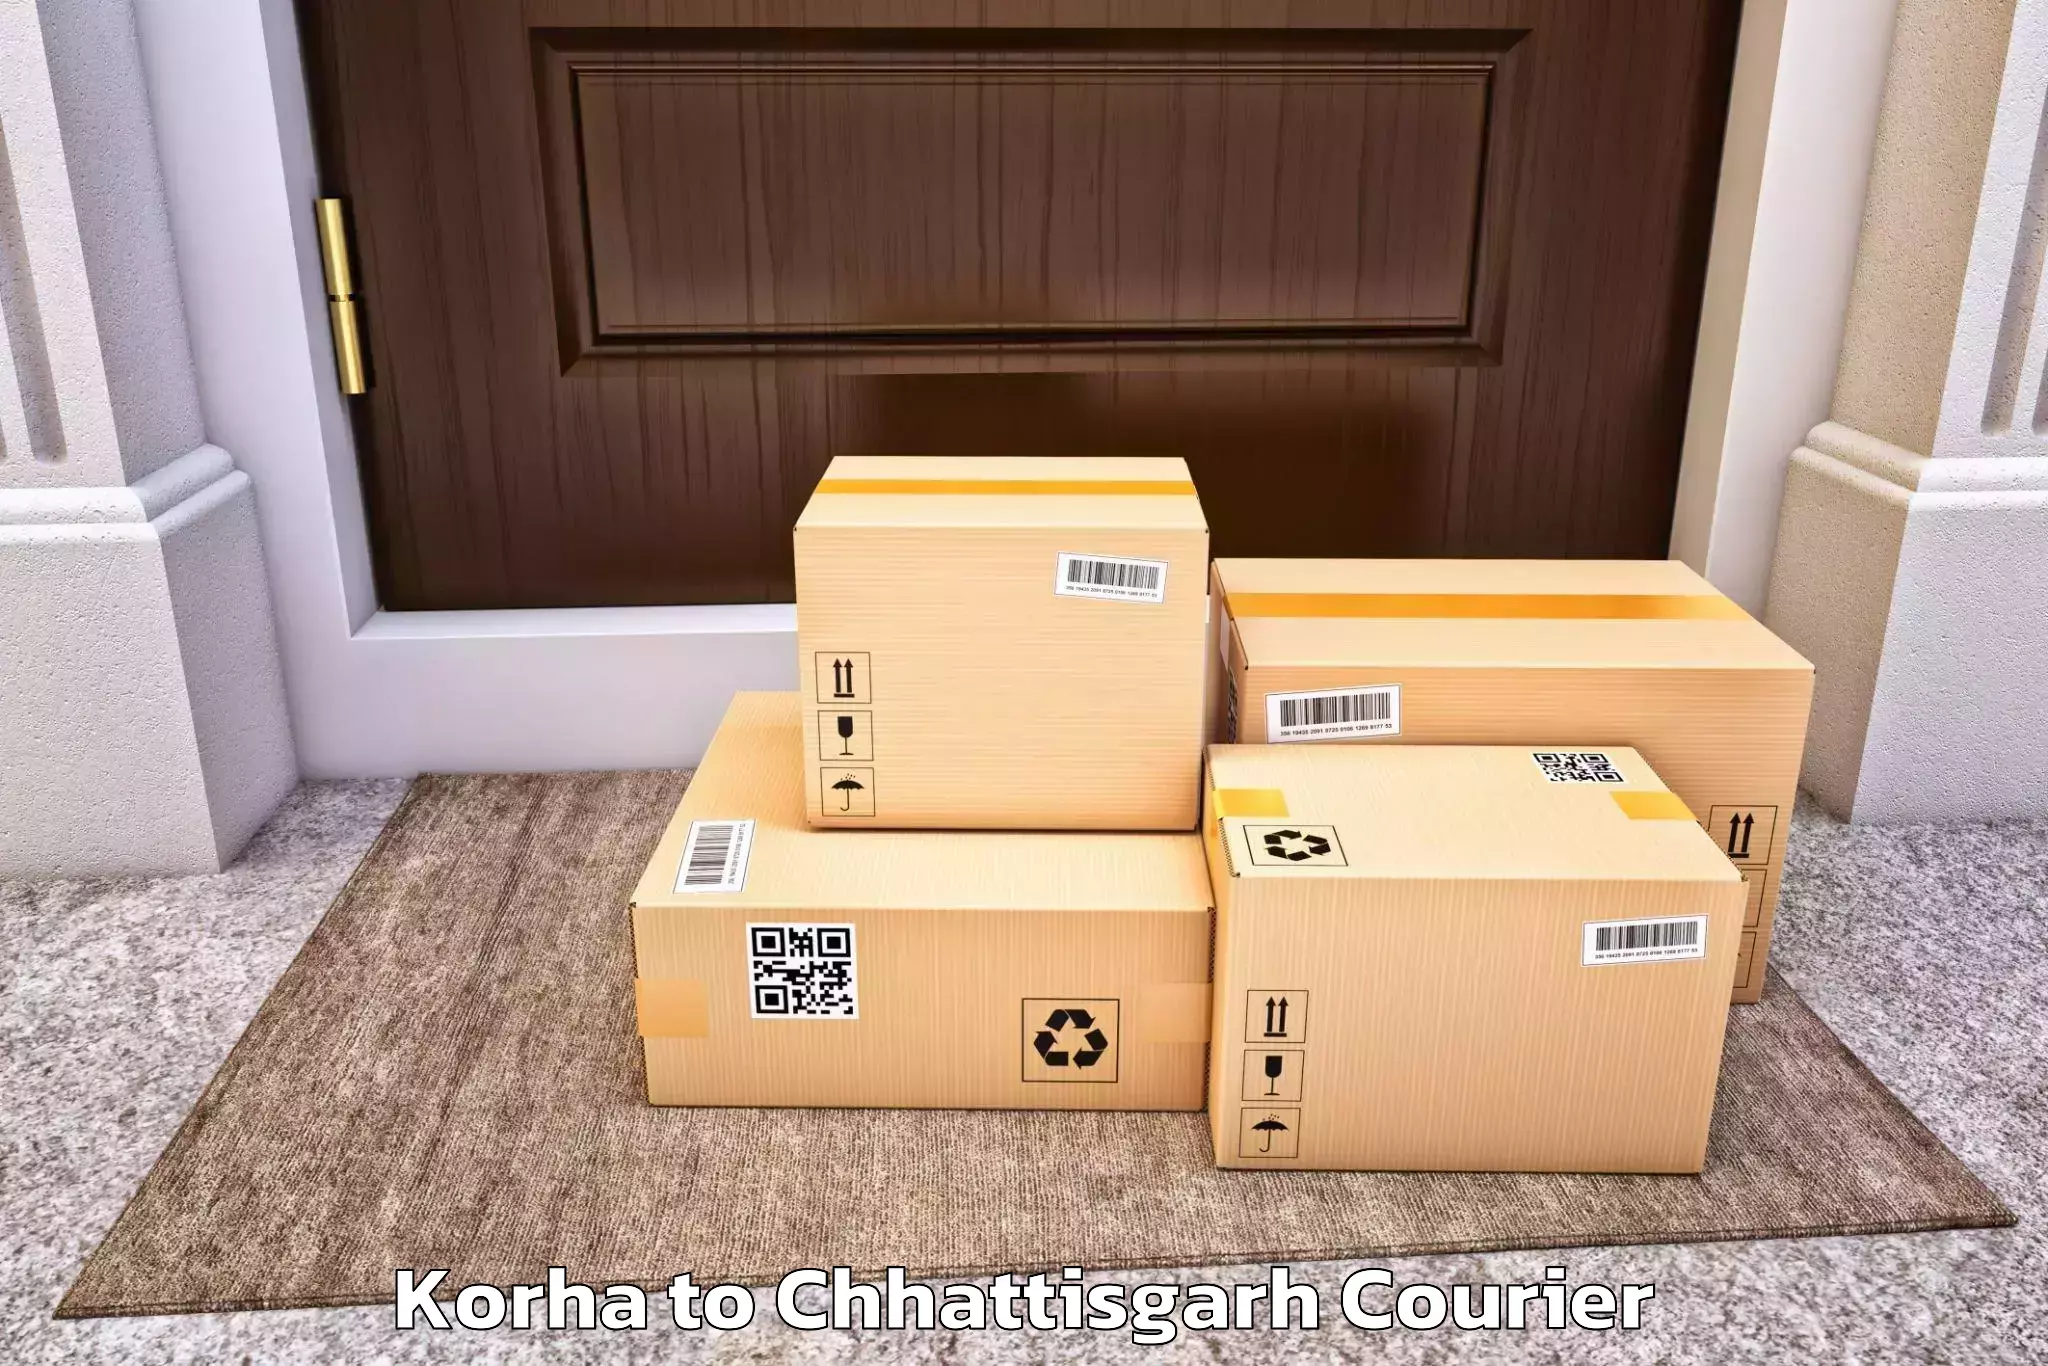 Professional moving company Korha to bagbahra